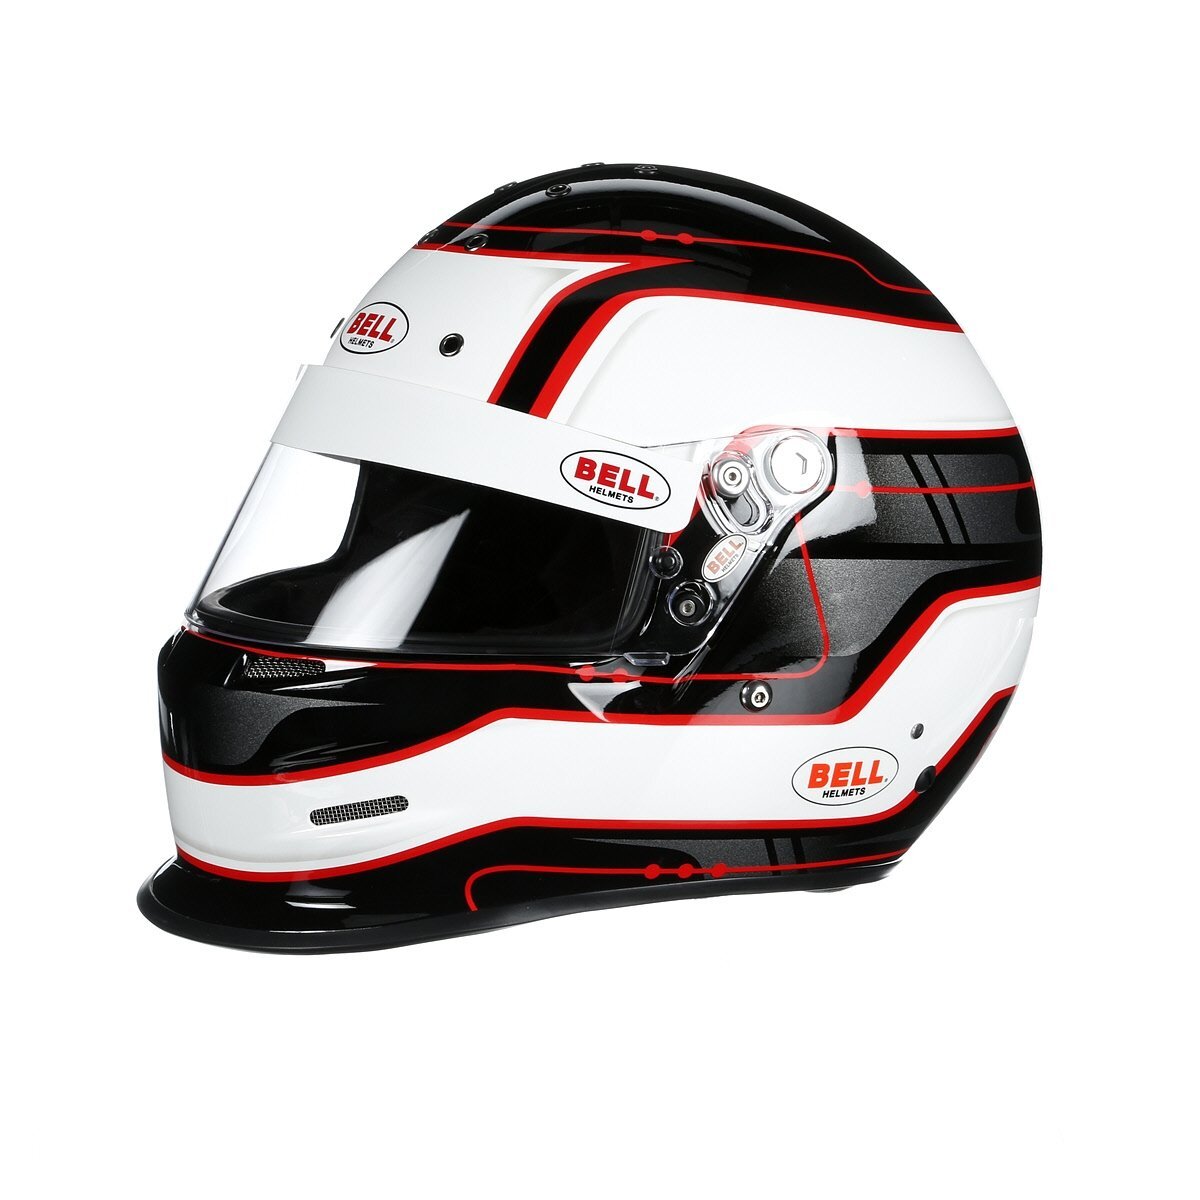 Casque Bell GP3 Sport, superbe déco de casque de sport auto